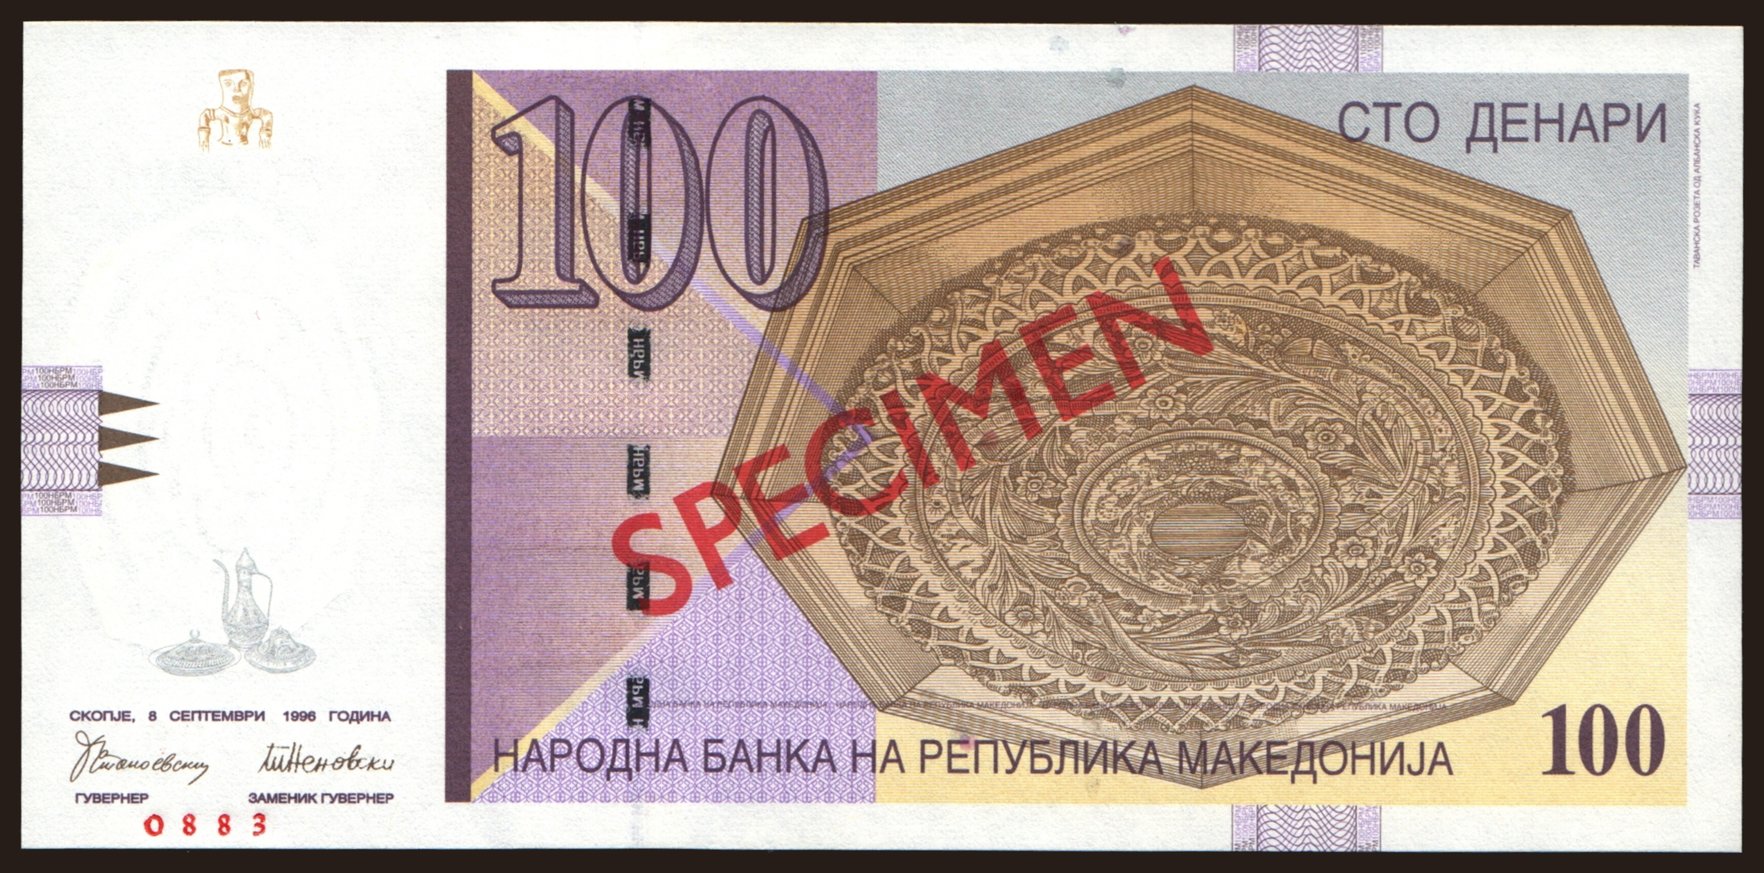 100 denari, 1996, SPECIMEN